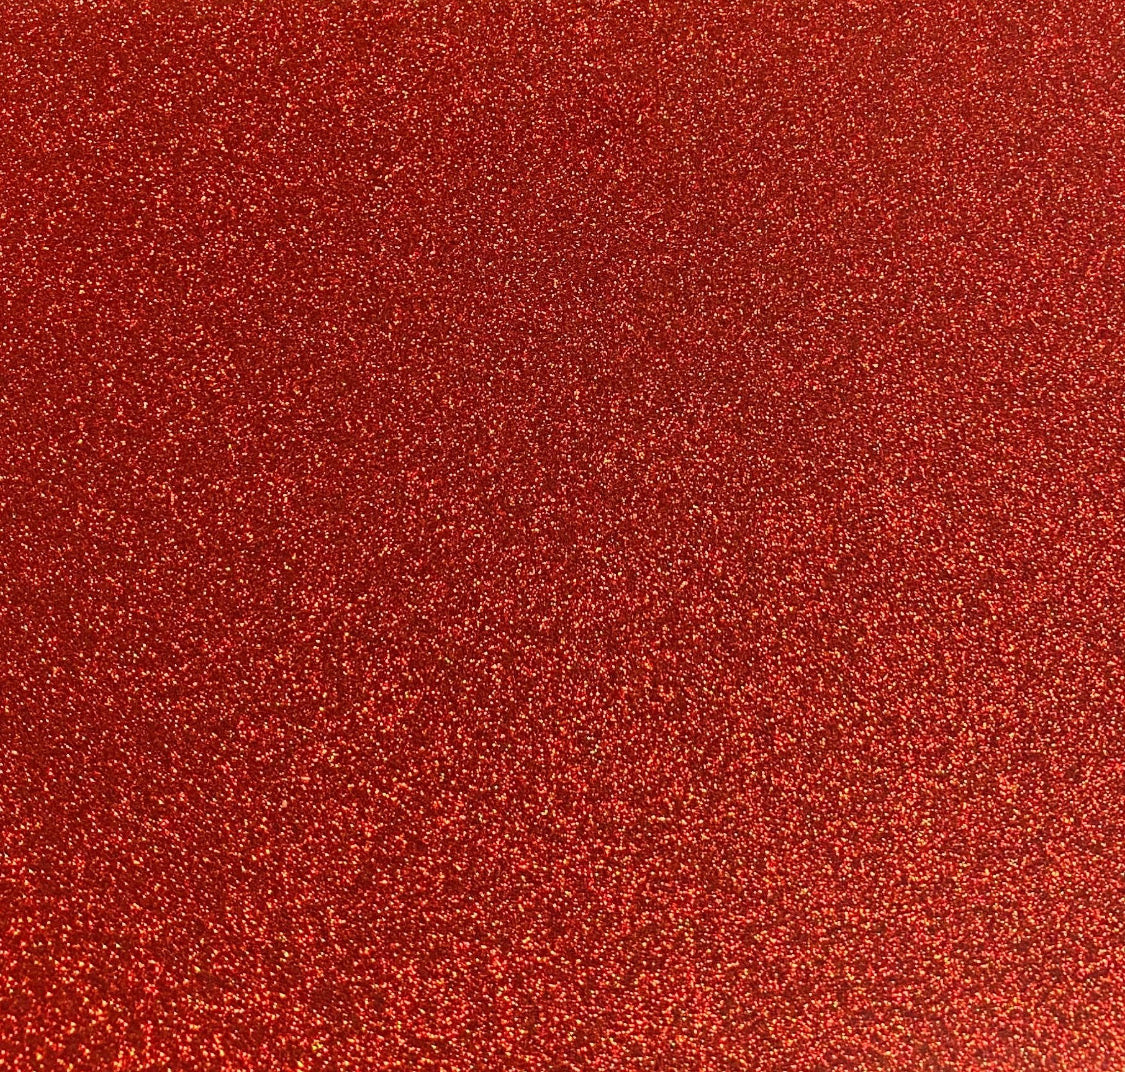 Red Glitter HTV